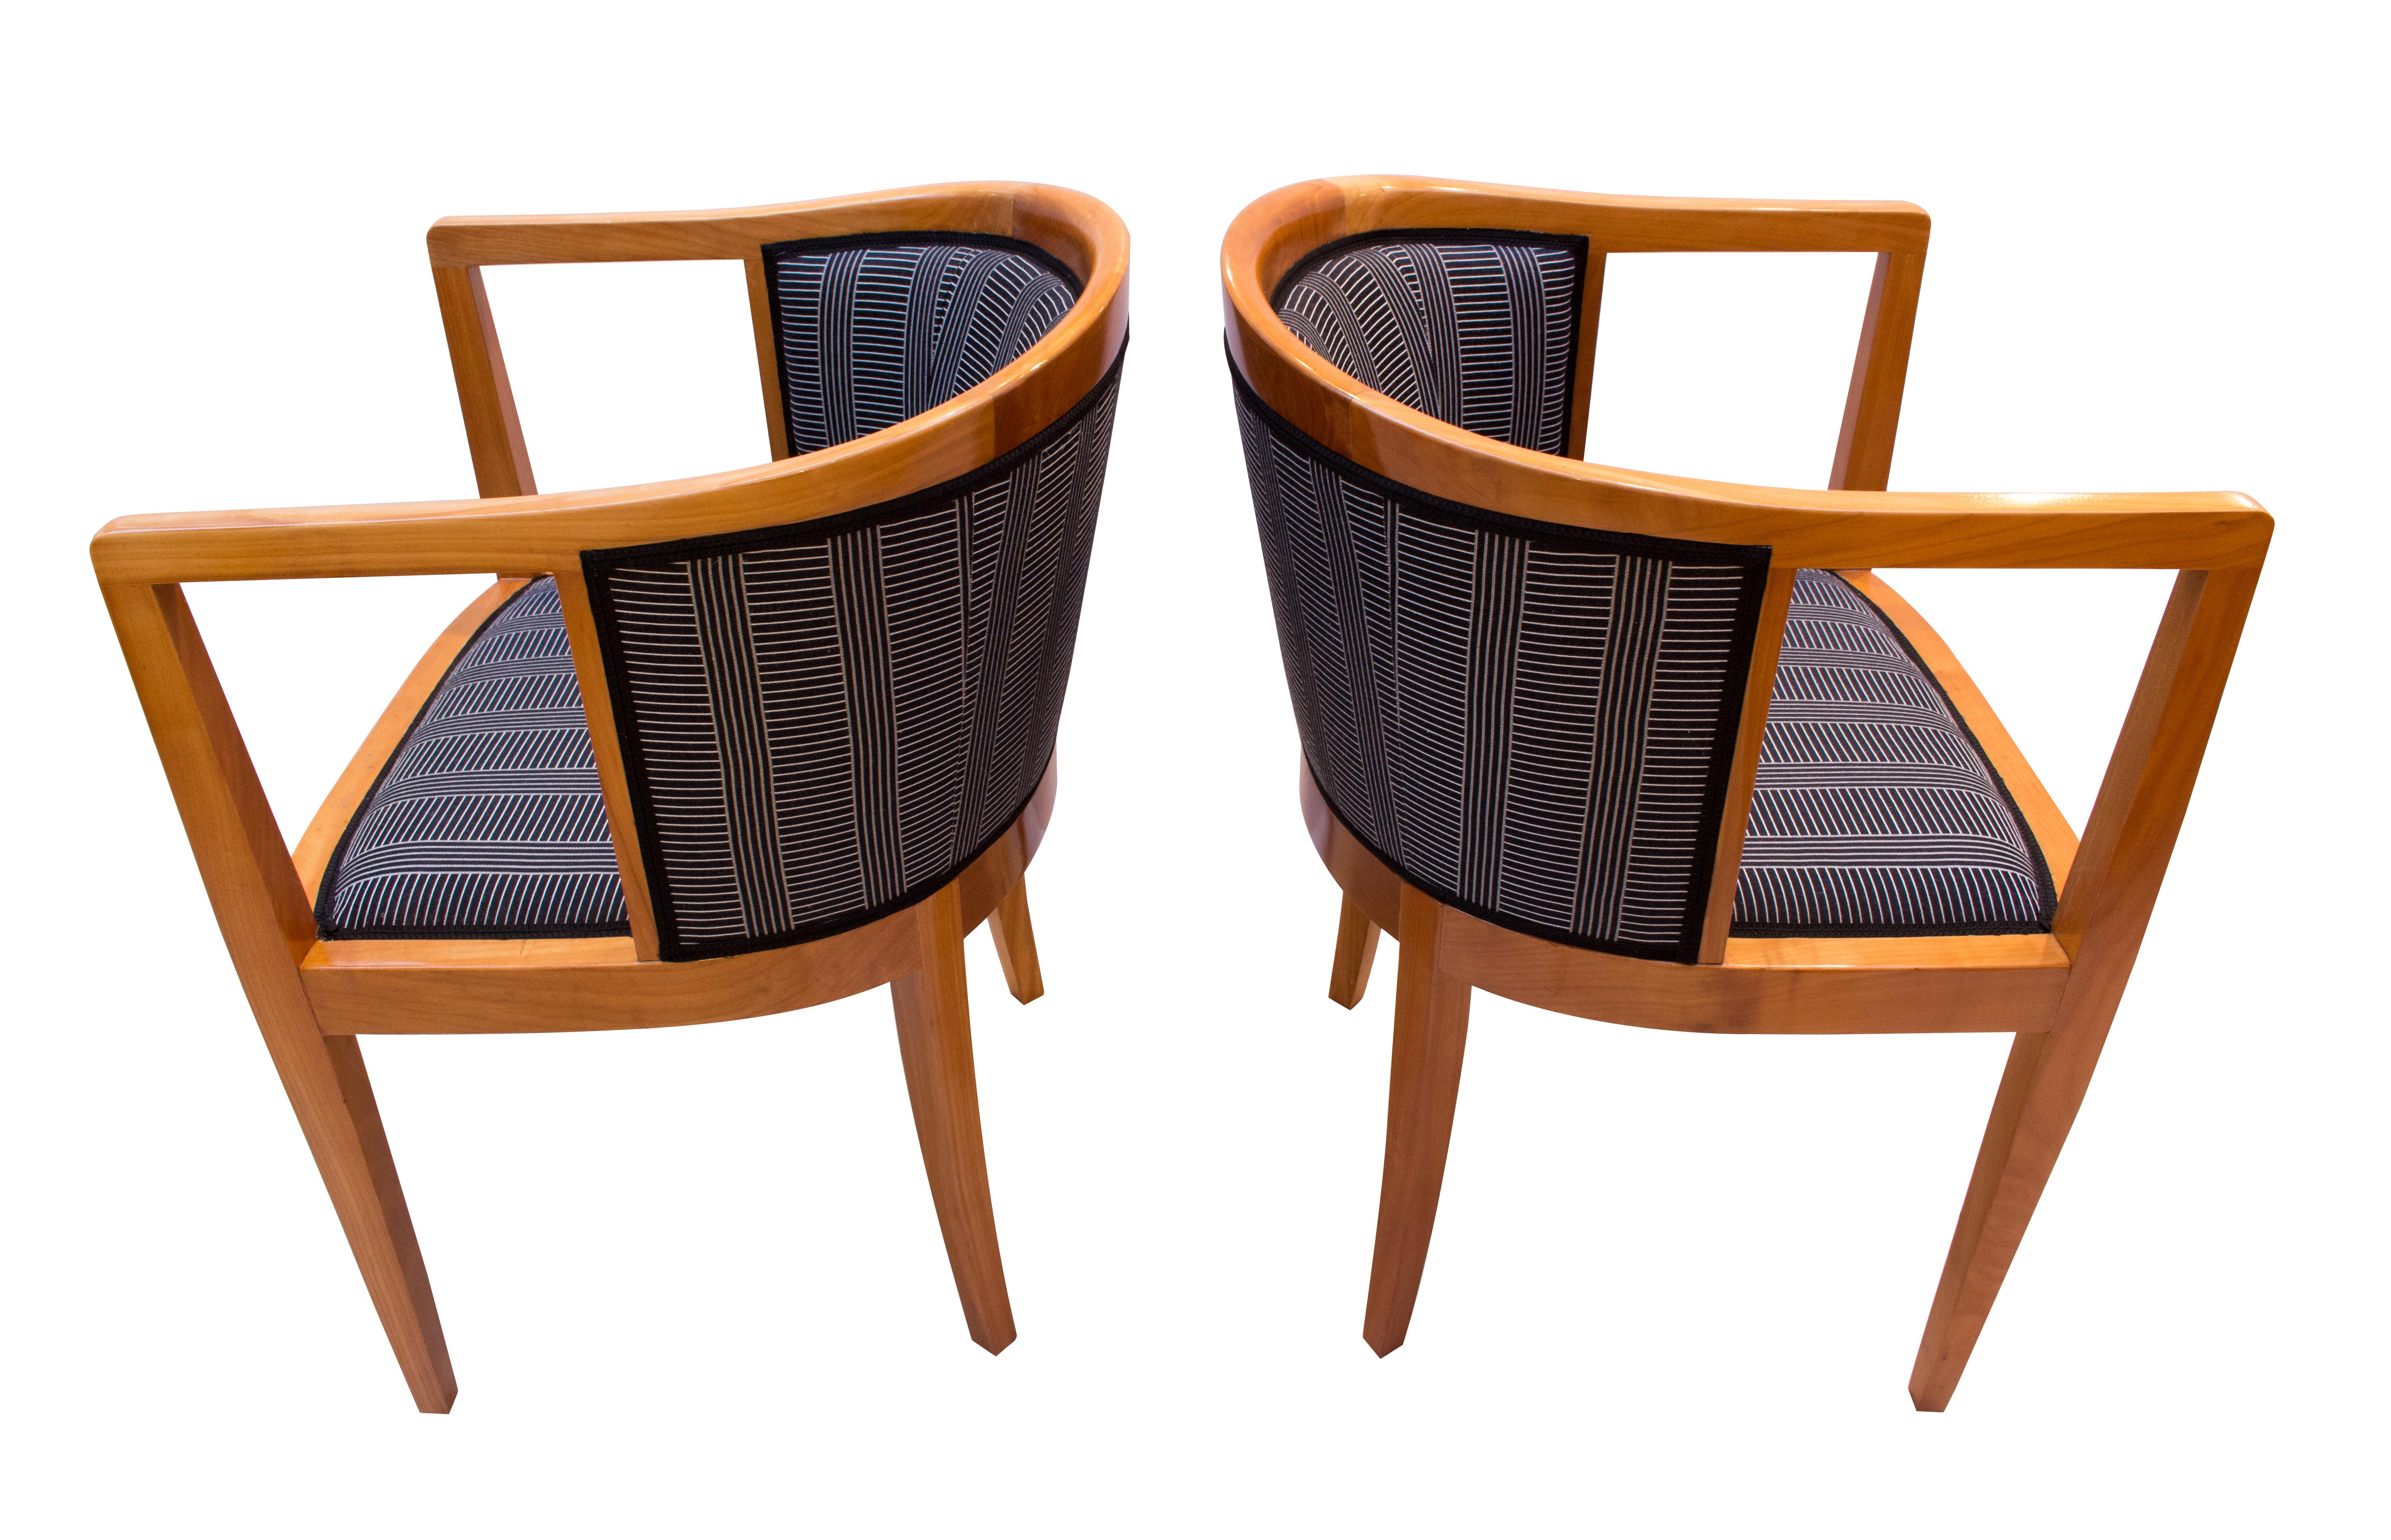 Sehr schönes Paar Bergere aus der Zeit des Jugendstils in massivem Kirschholz. Die Sessel sind neu gepolstert und mit einem neuen Stoff bezogen, der nach einem Entwurf von Josef Hoffmann gefertigt wurde. In sehr gutem restauriertem Zustand.